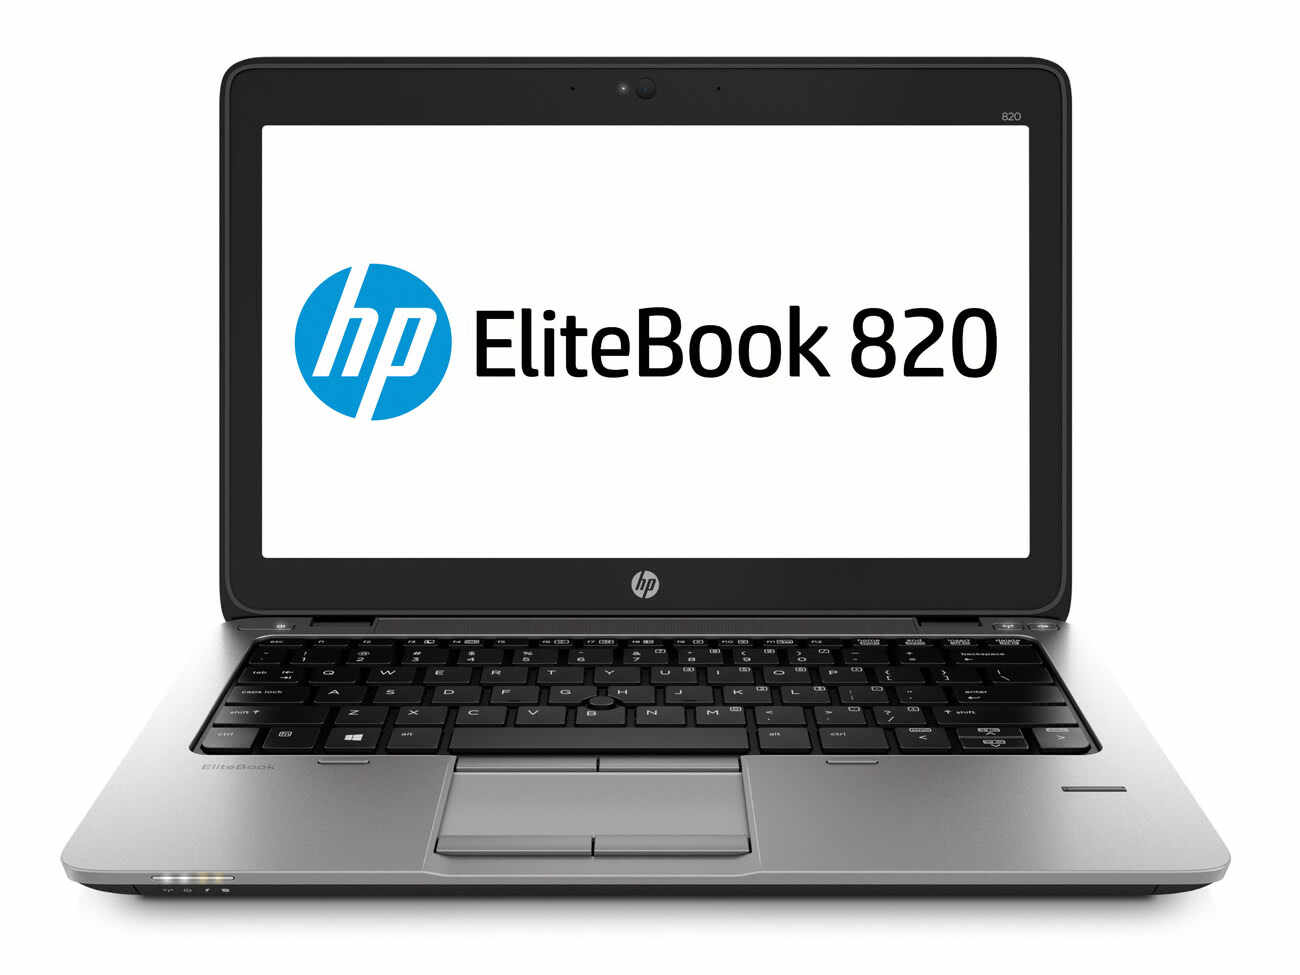 Laptop HP Elitebook 820 G2, Intel Core i5-5300U 2.30GHz, 4GB DDR3, 120GB SSD, 12.5 Inch, Webcam